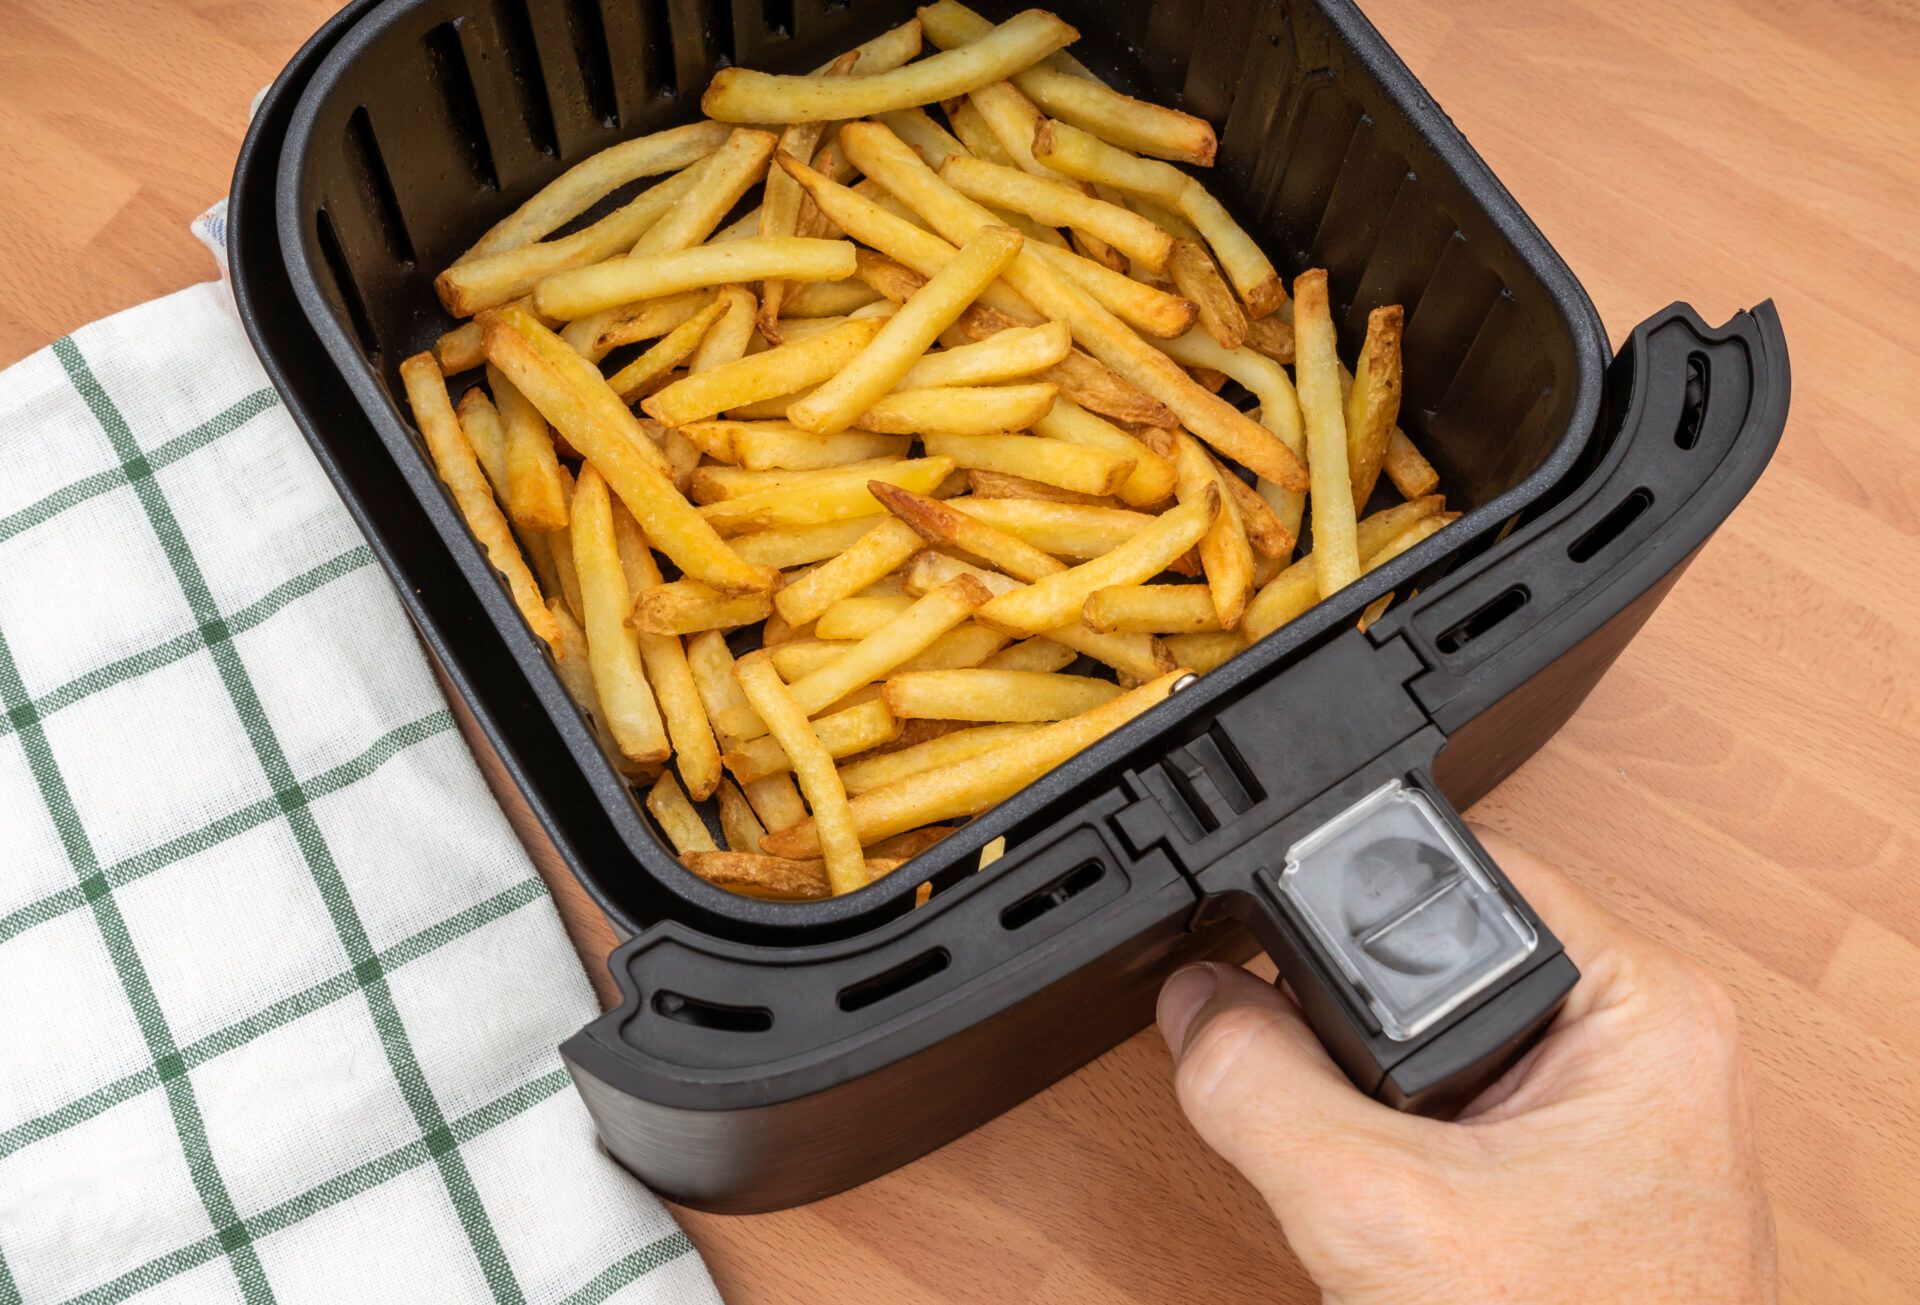 Un expert de l’Airfryer révèle comment obtenir des chips parfaites à chaque fois